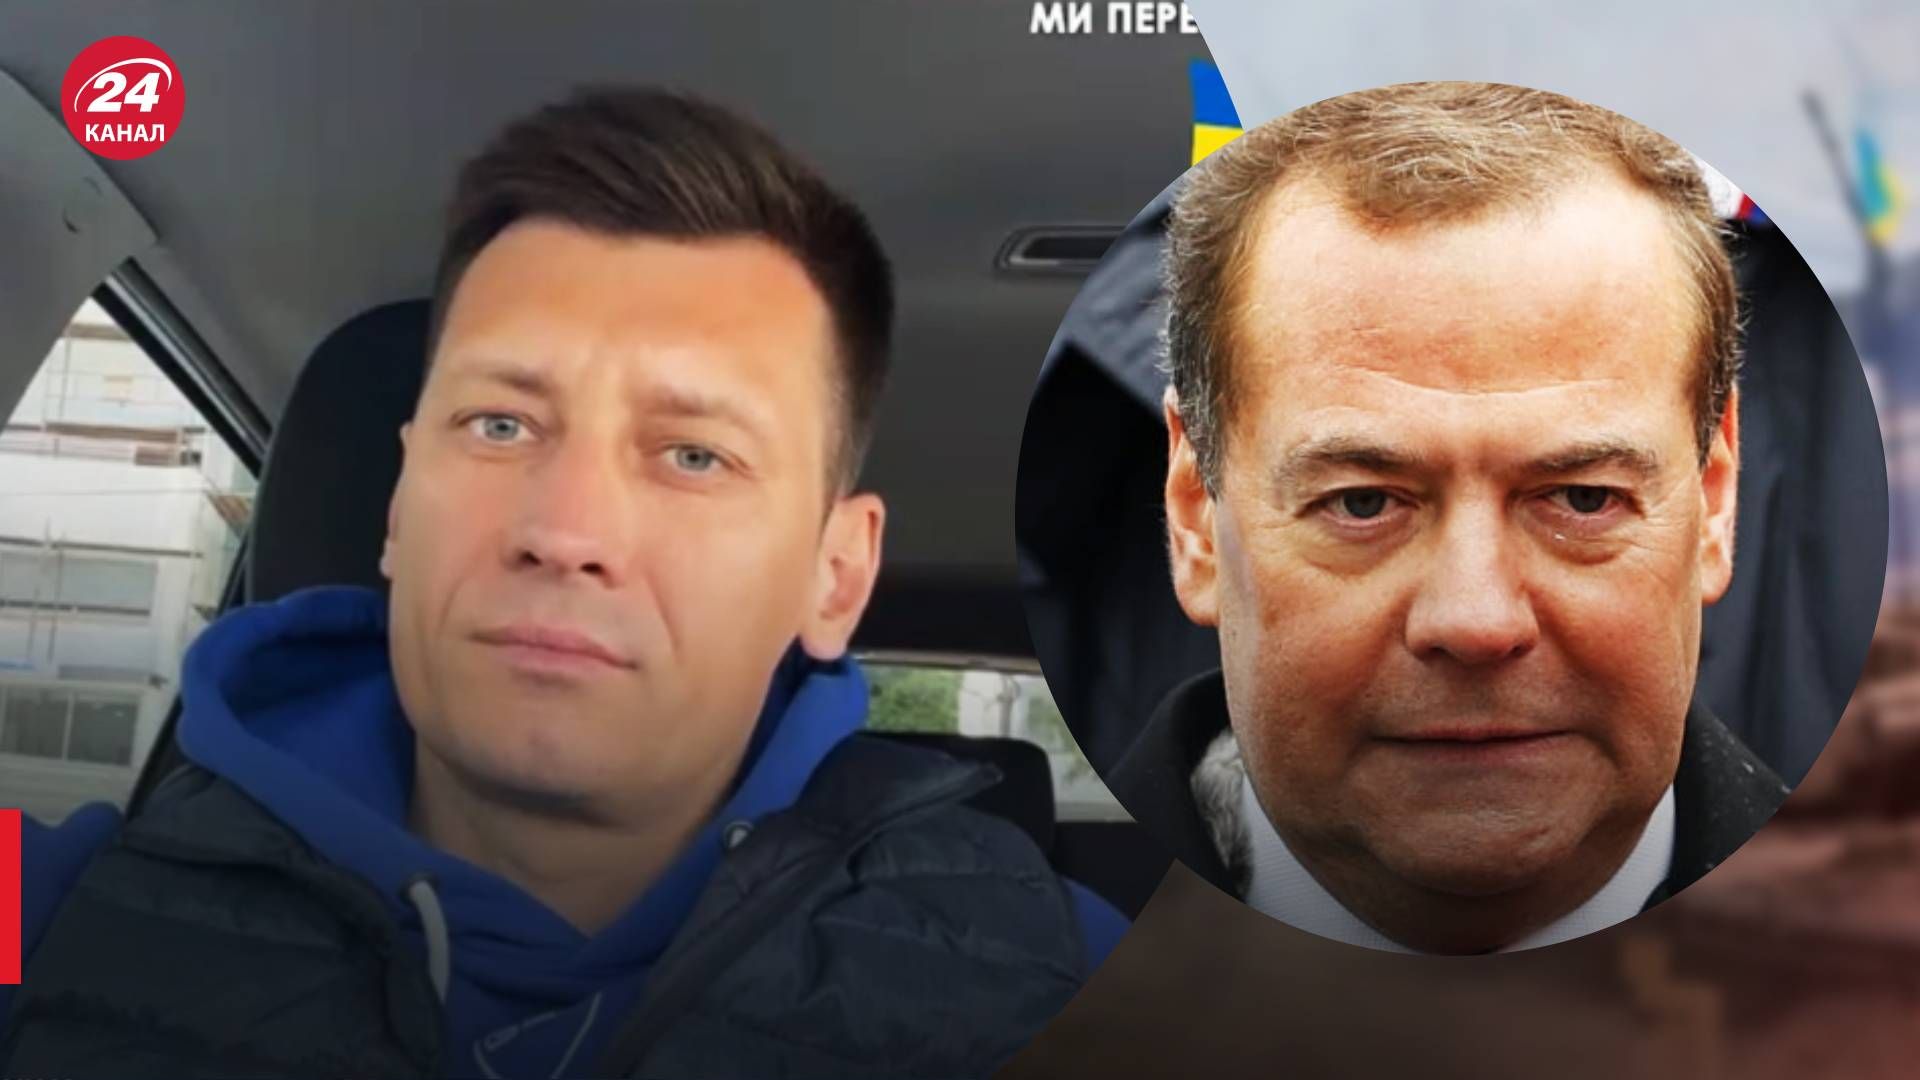 Медведева угрожаю оппозиционерами уничтожить как бешеных собак - реакция Гудкова - 24 Канал